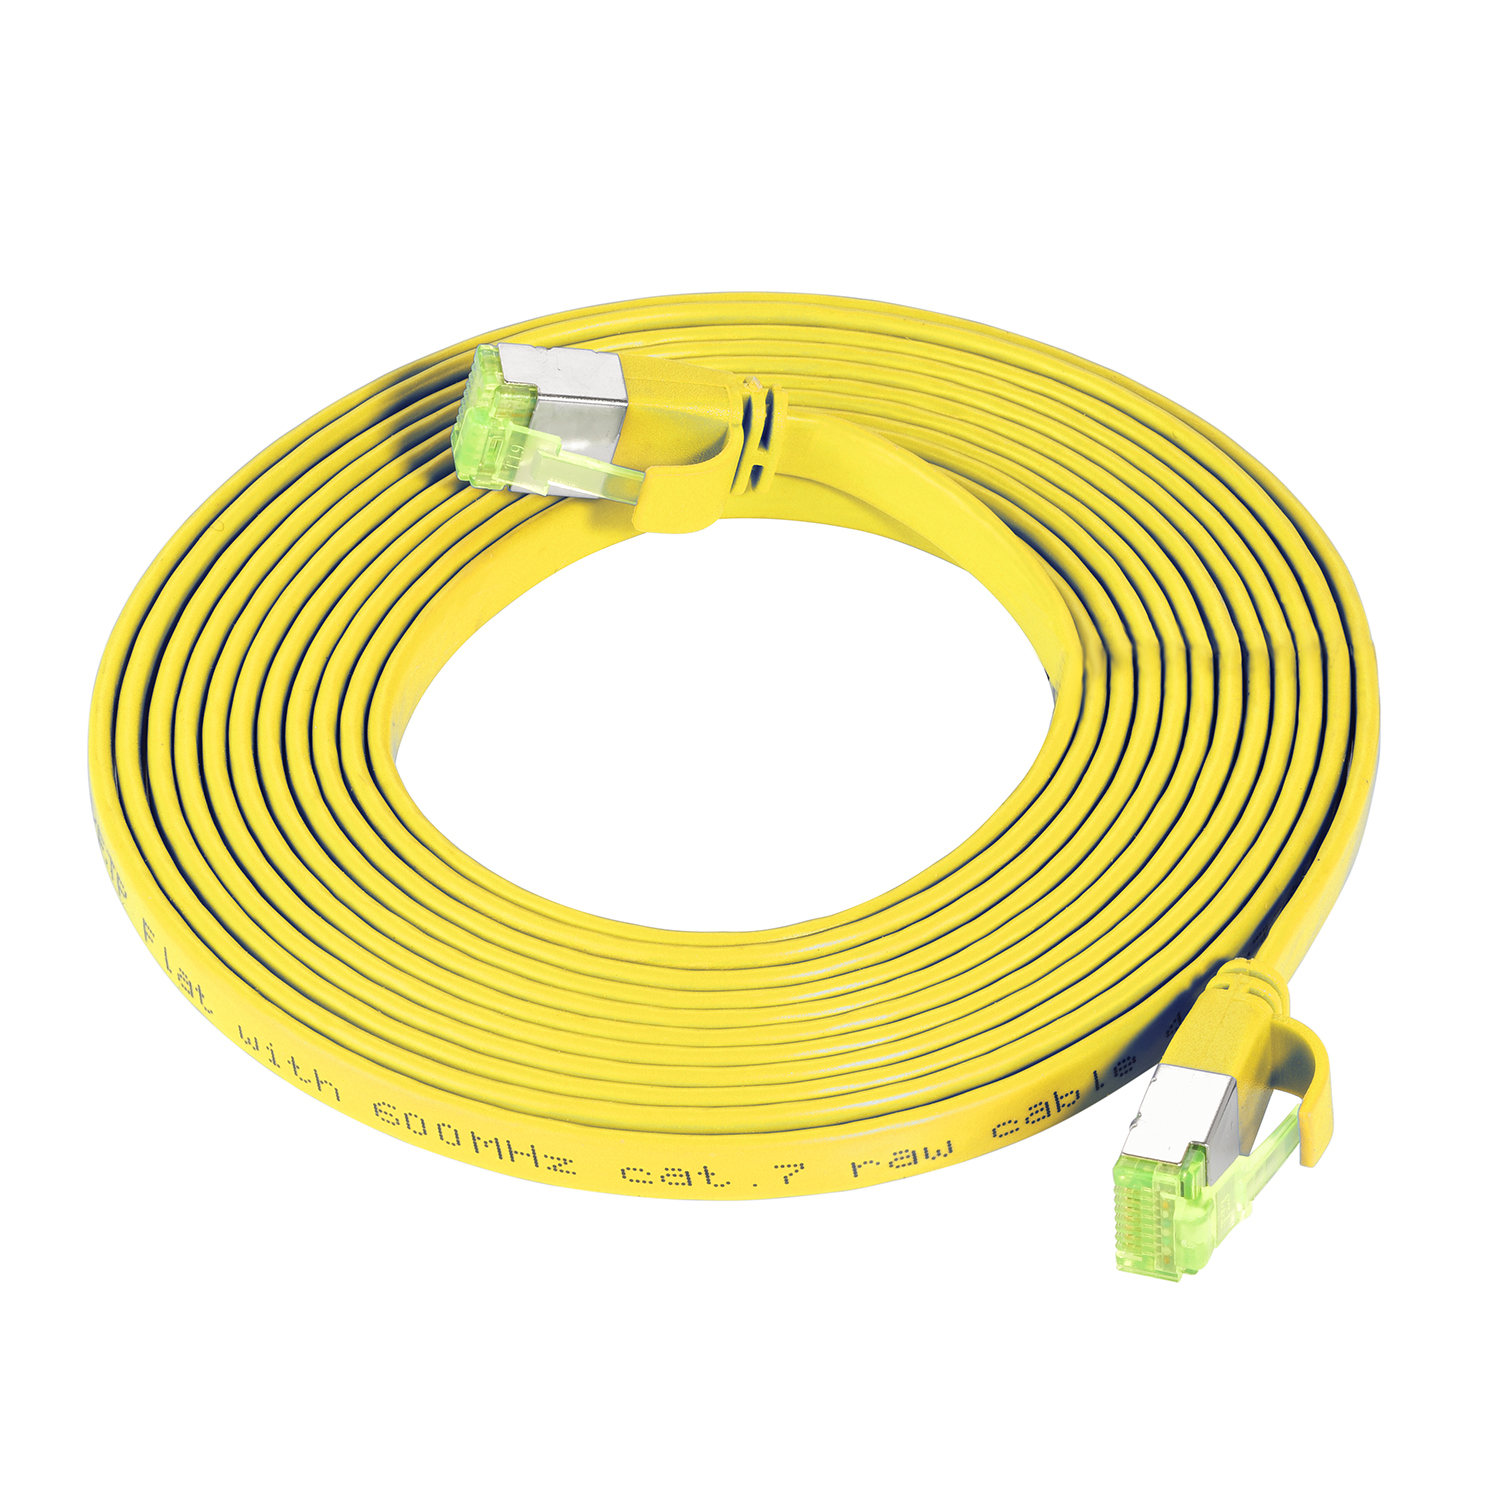 TPFNET 7,5m Patchkabel GBit, U/FTP / Netzwerkkabel, gelb, Flachkabel 7,5 m 10